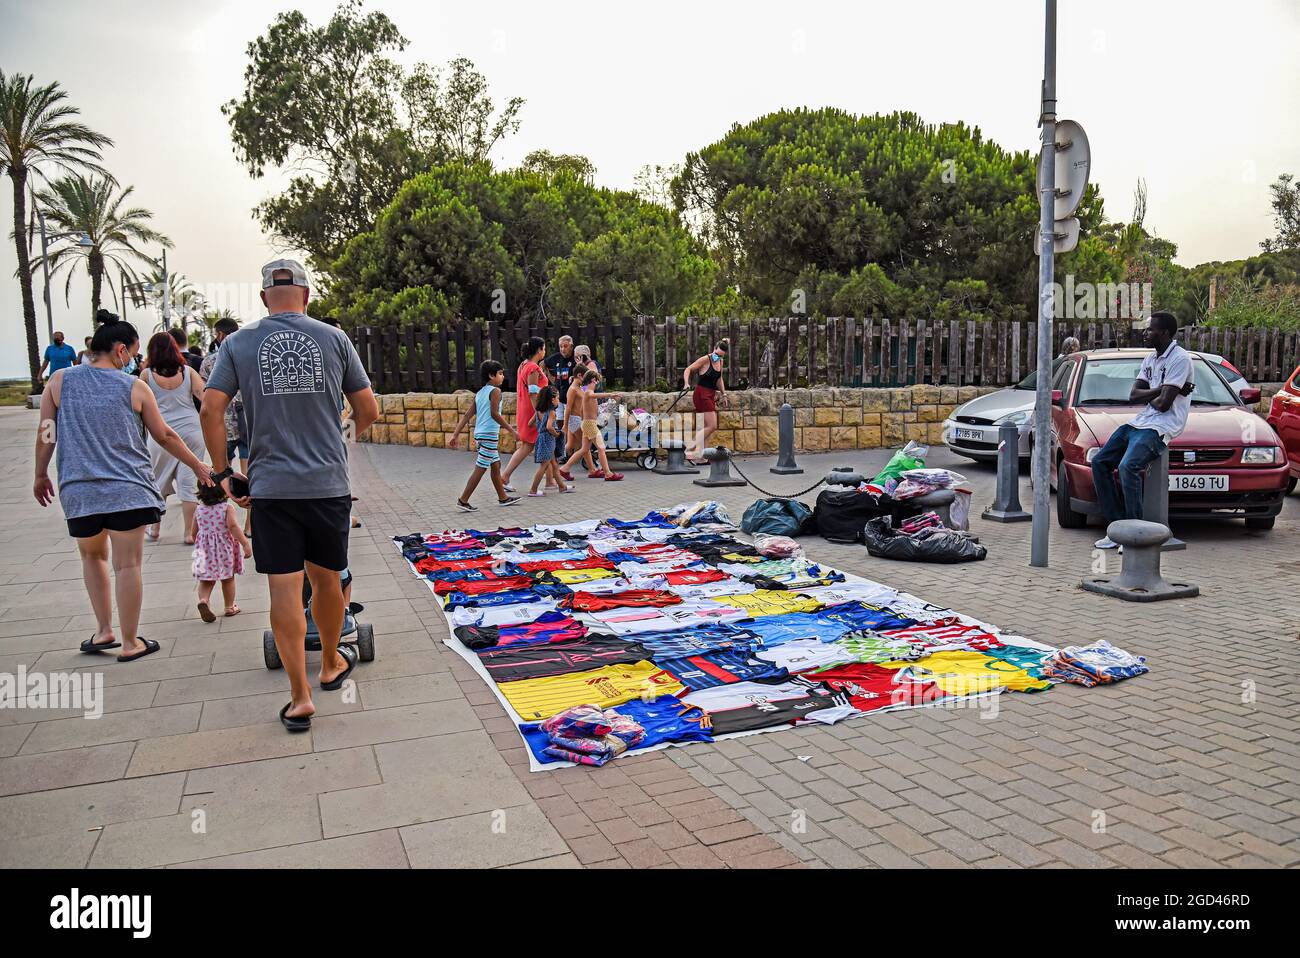 La gente camina delante de los puestos con mantas en el suelo cubiertas de productos ilegales lo largo de Paseo Maritimo Street en ilegales conocidos como 'hombres' o 'Top